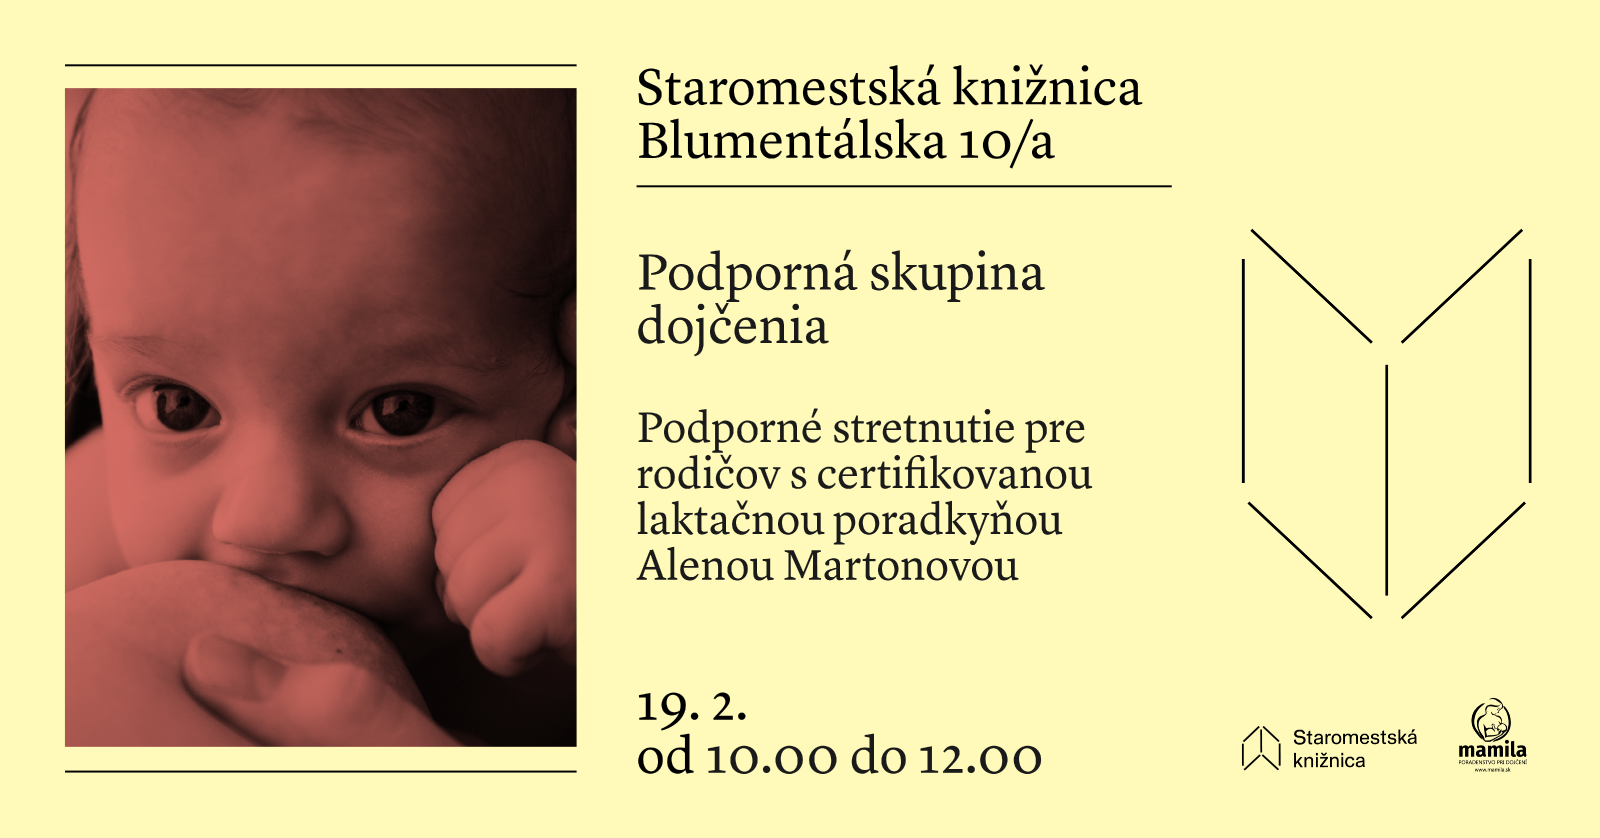 Podporné stretnutie dojčenia v Staromestskej knižnici na Blumentálskej 10/a v pondelok 19. februára od 10.00 do 12.00